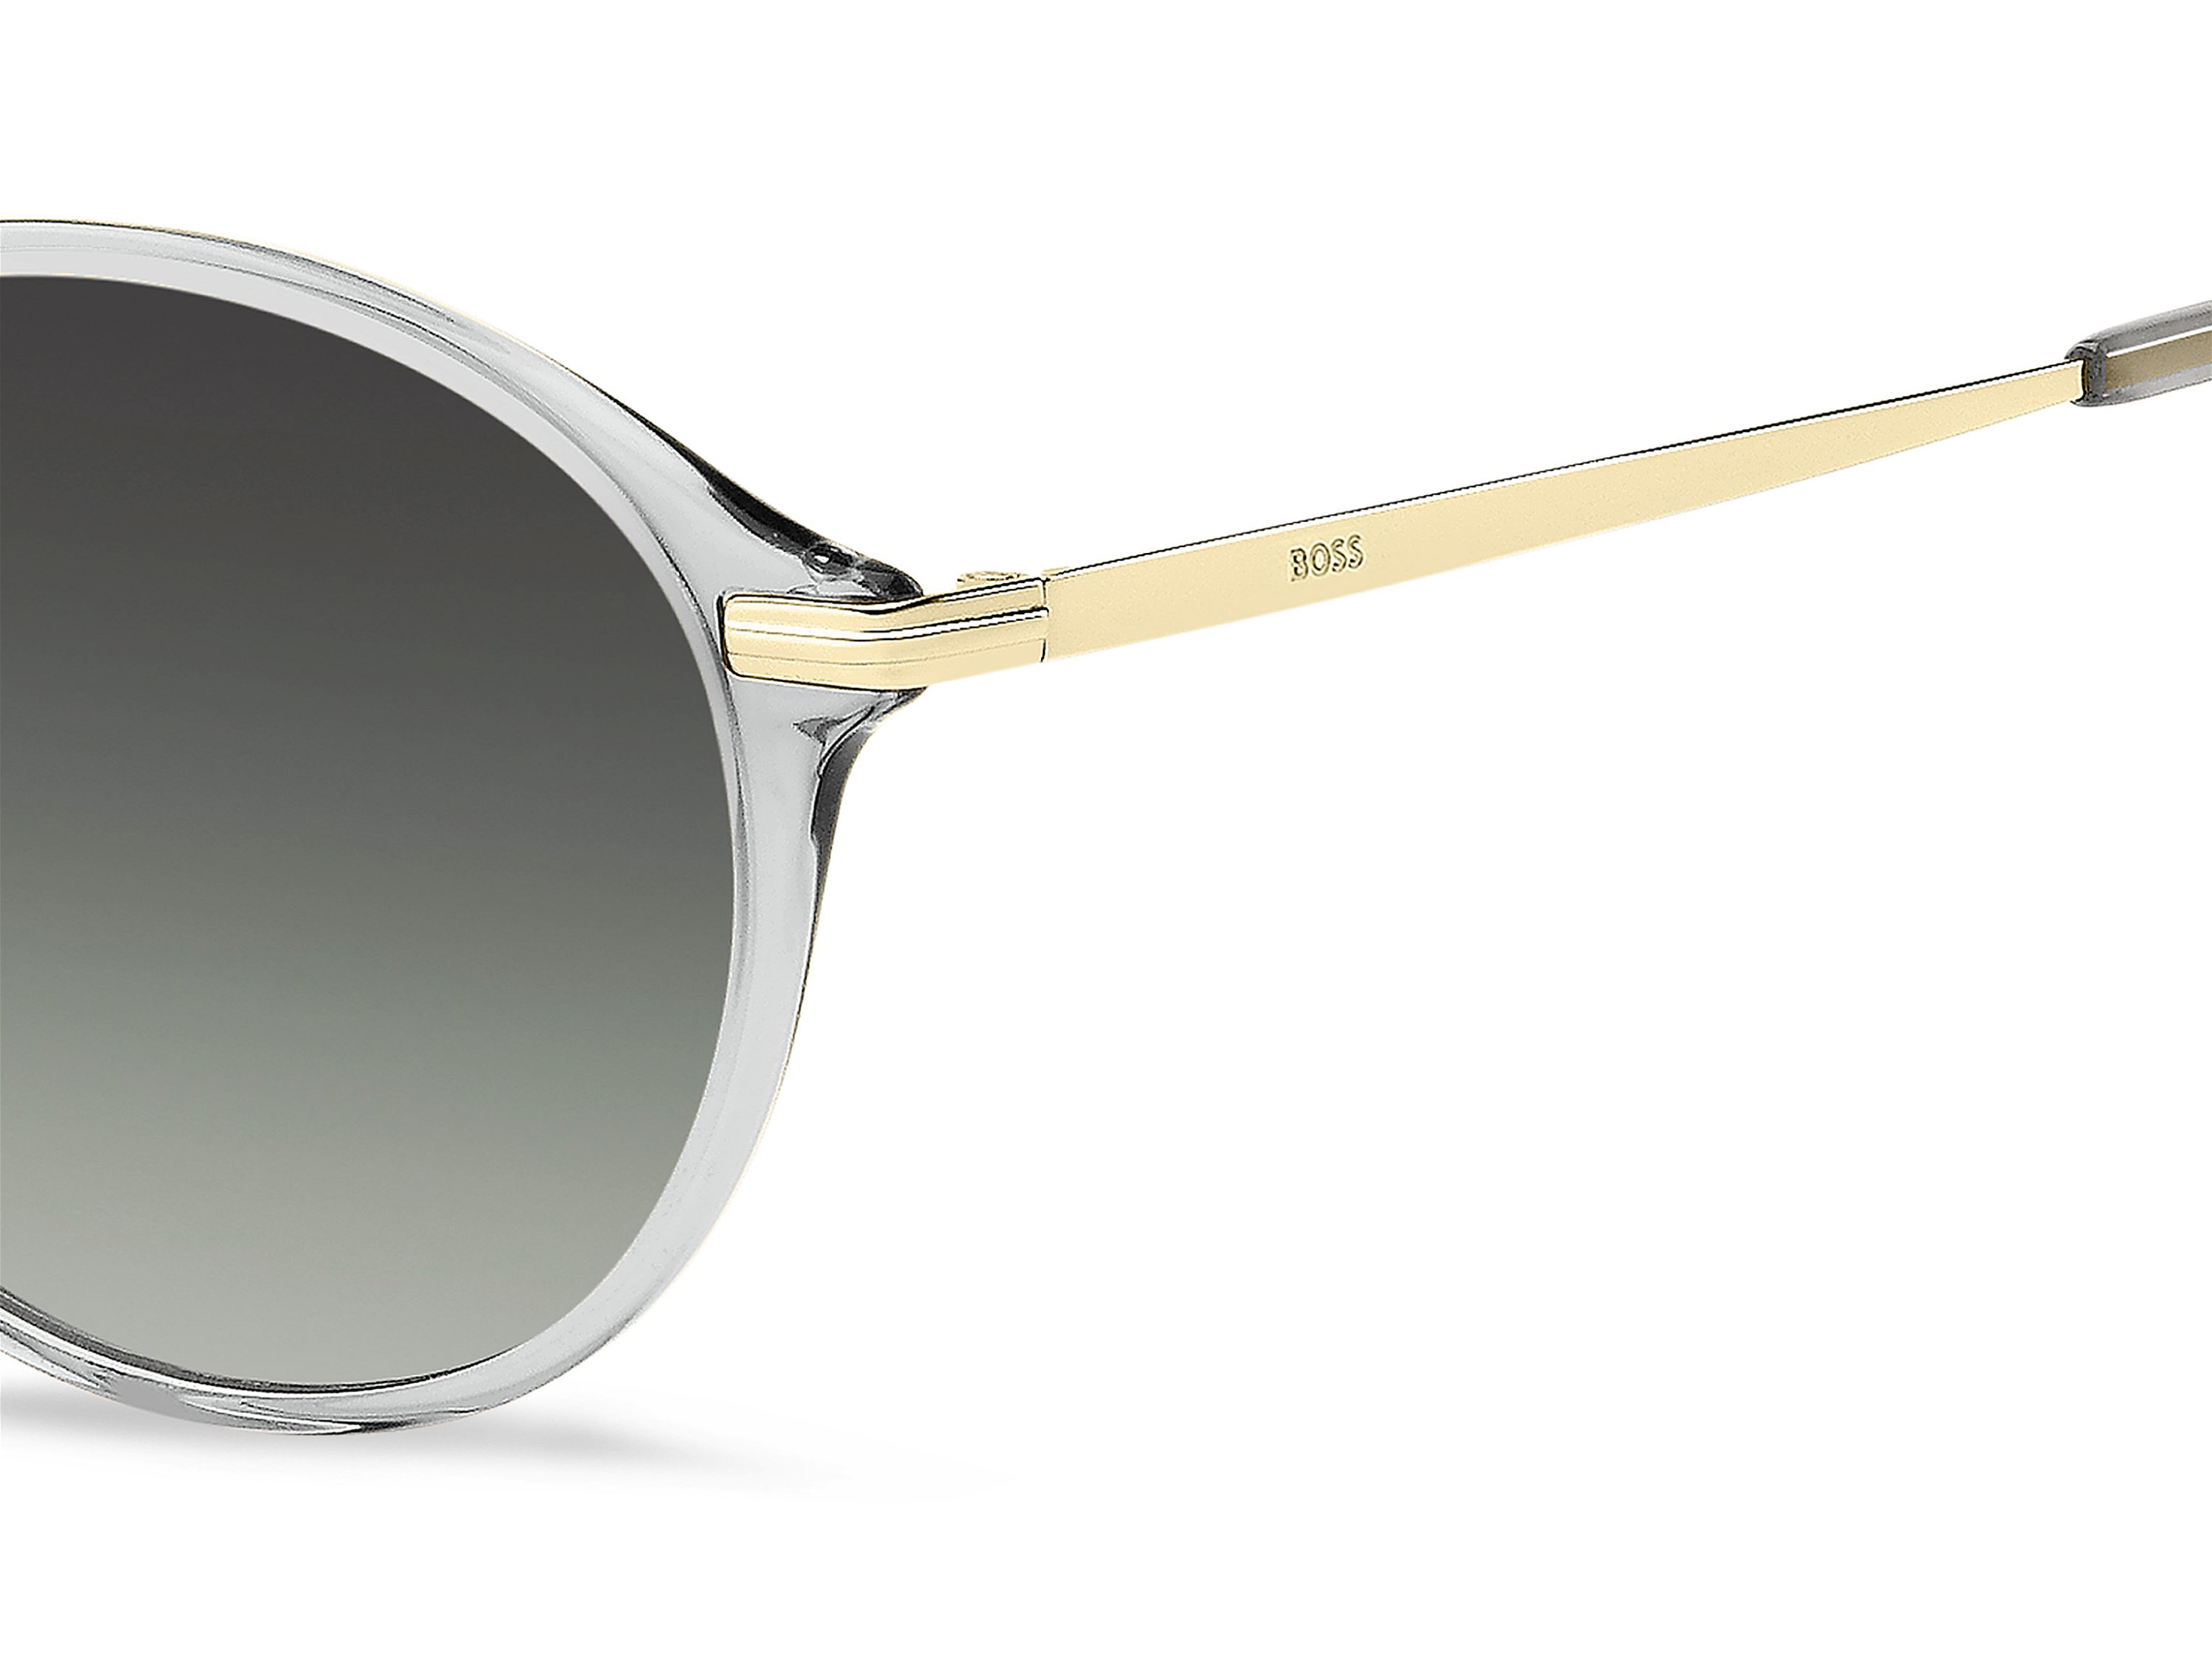 Das Bild zeigt die Sonnenbrille BOSS1662S FT3 von der Marke BOSS in Grau/Gold.